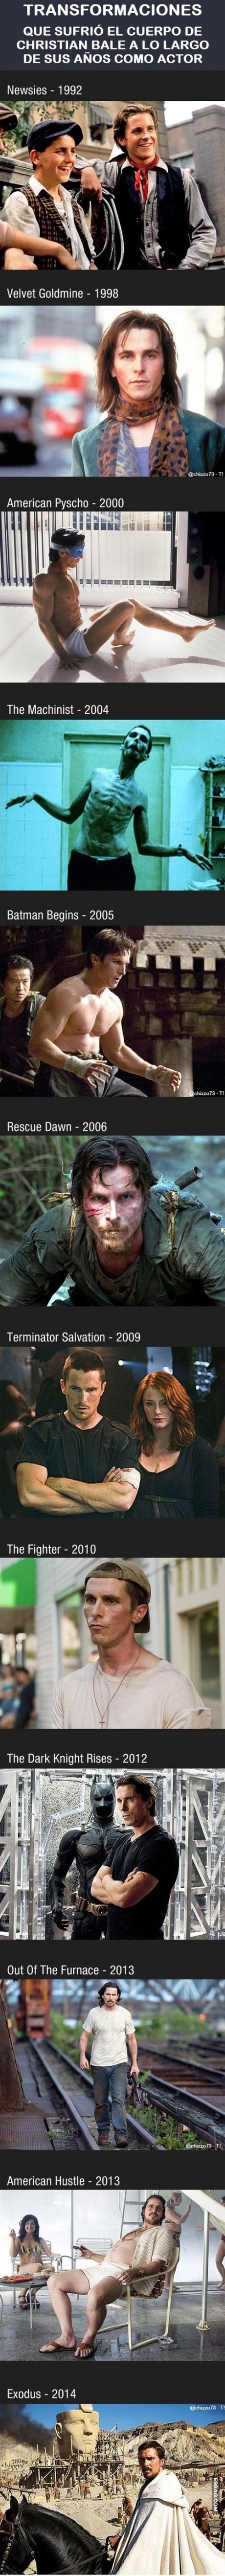 Transformaciones que sufrió el cuerpo de Christian Bale